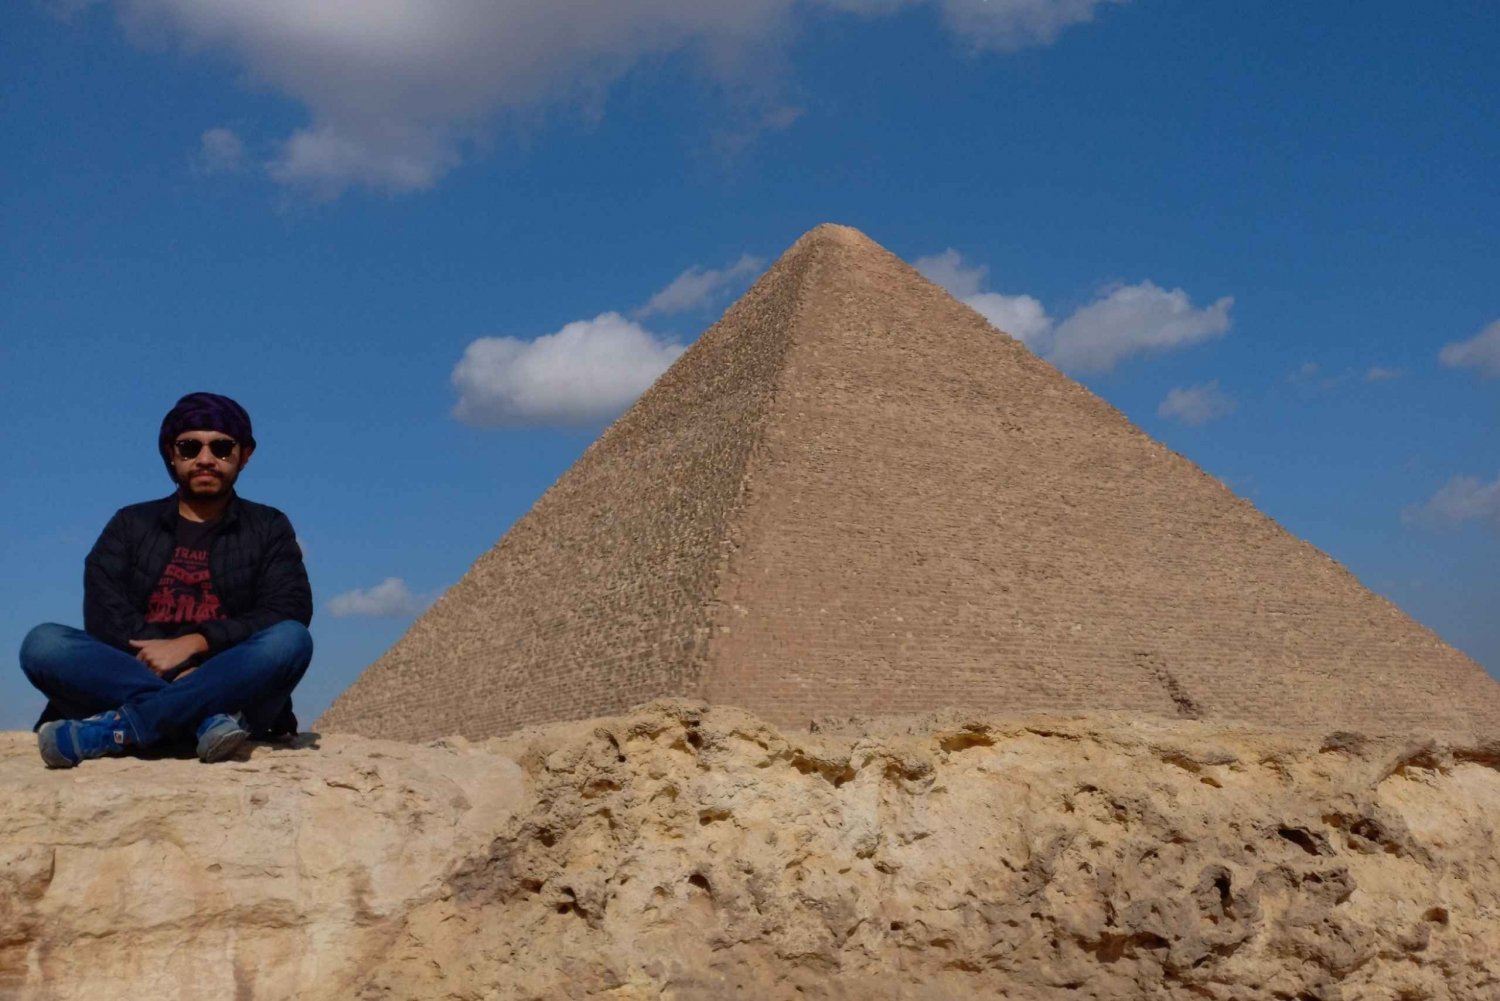 Gizeh ou Le Caire : Pyramides Sphinx Musée égyptien